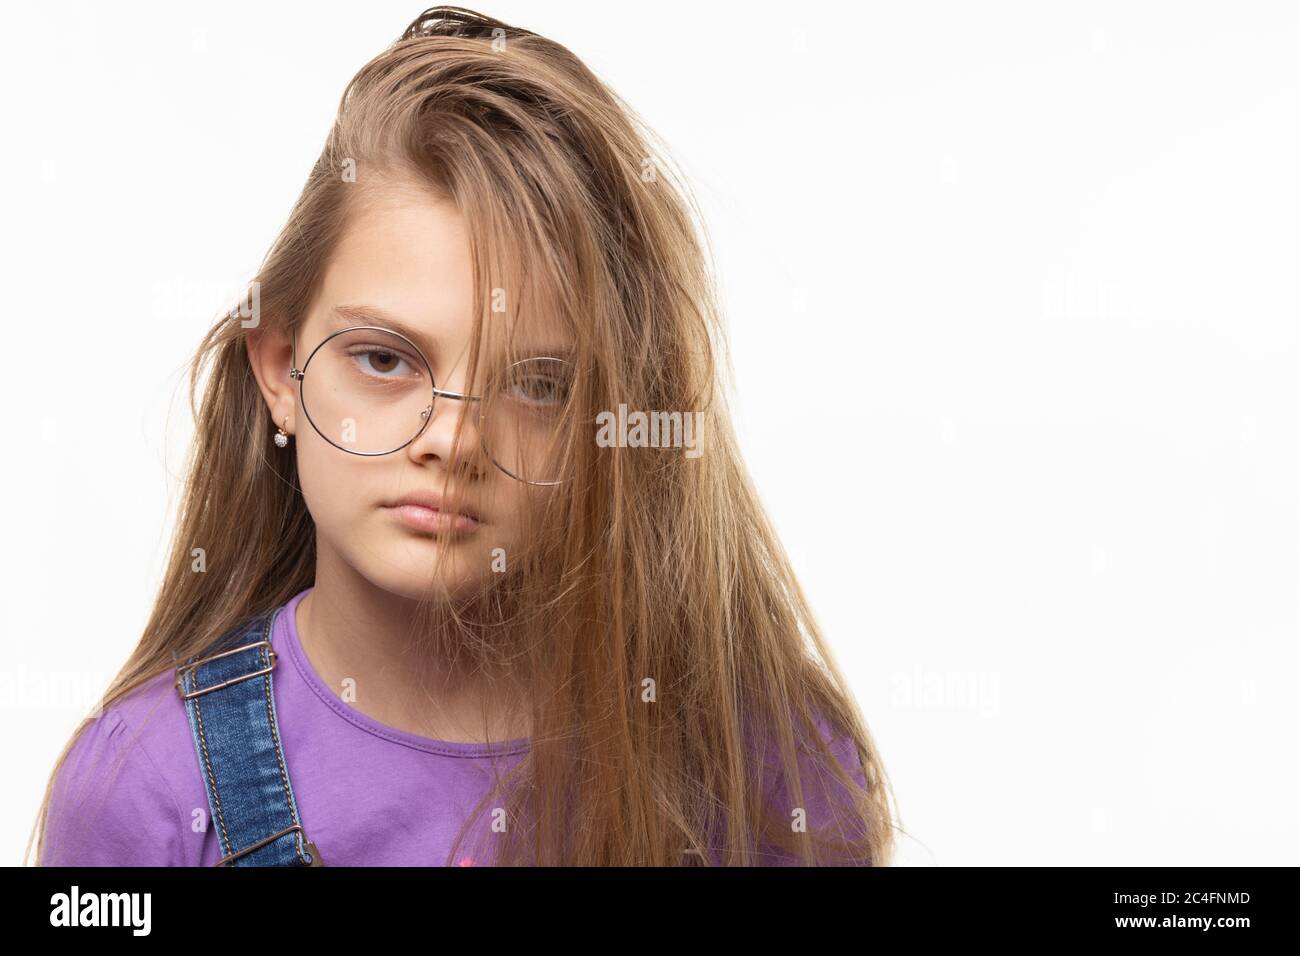 Porträt eines elfjährigen Mädchens auf weißem Hintergrund mit originaler Frisur Stockfoto